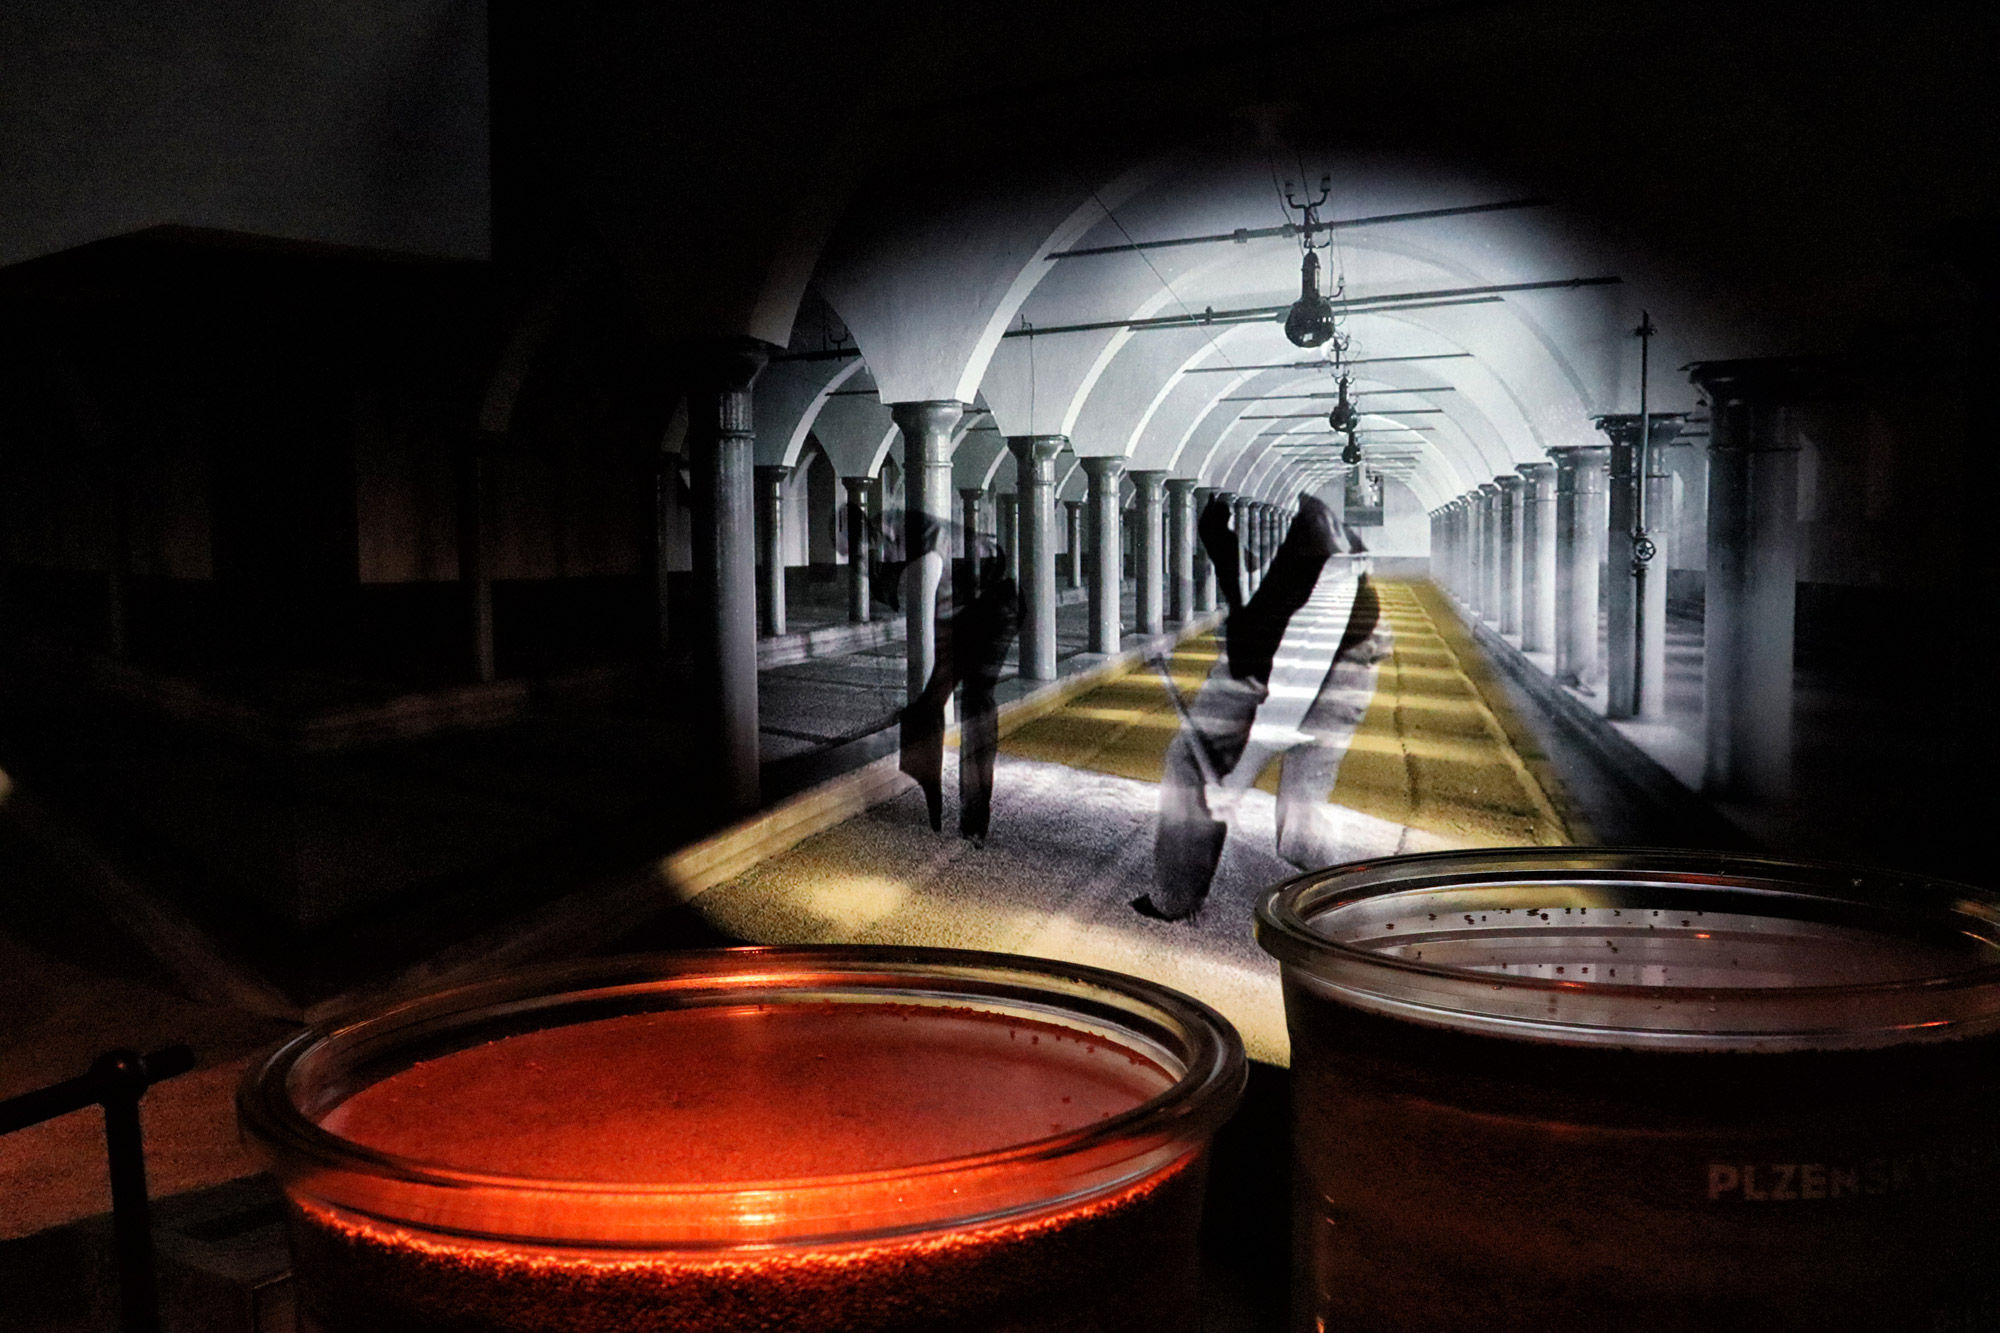 Een bezoek aan de Pilsner Urquell brouwerij